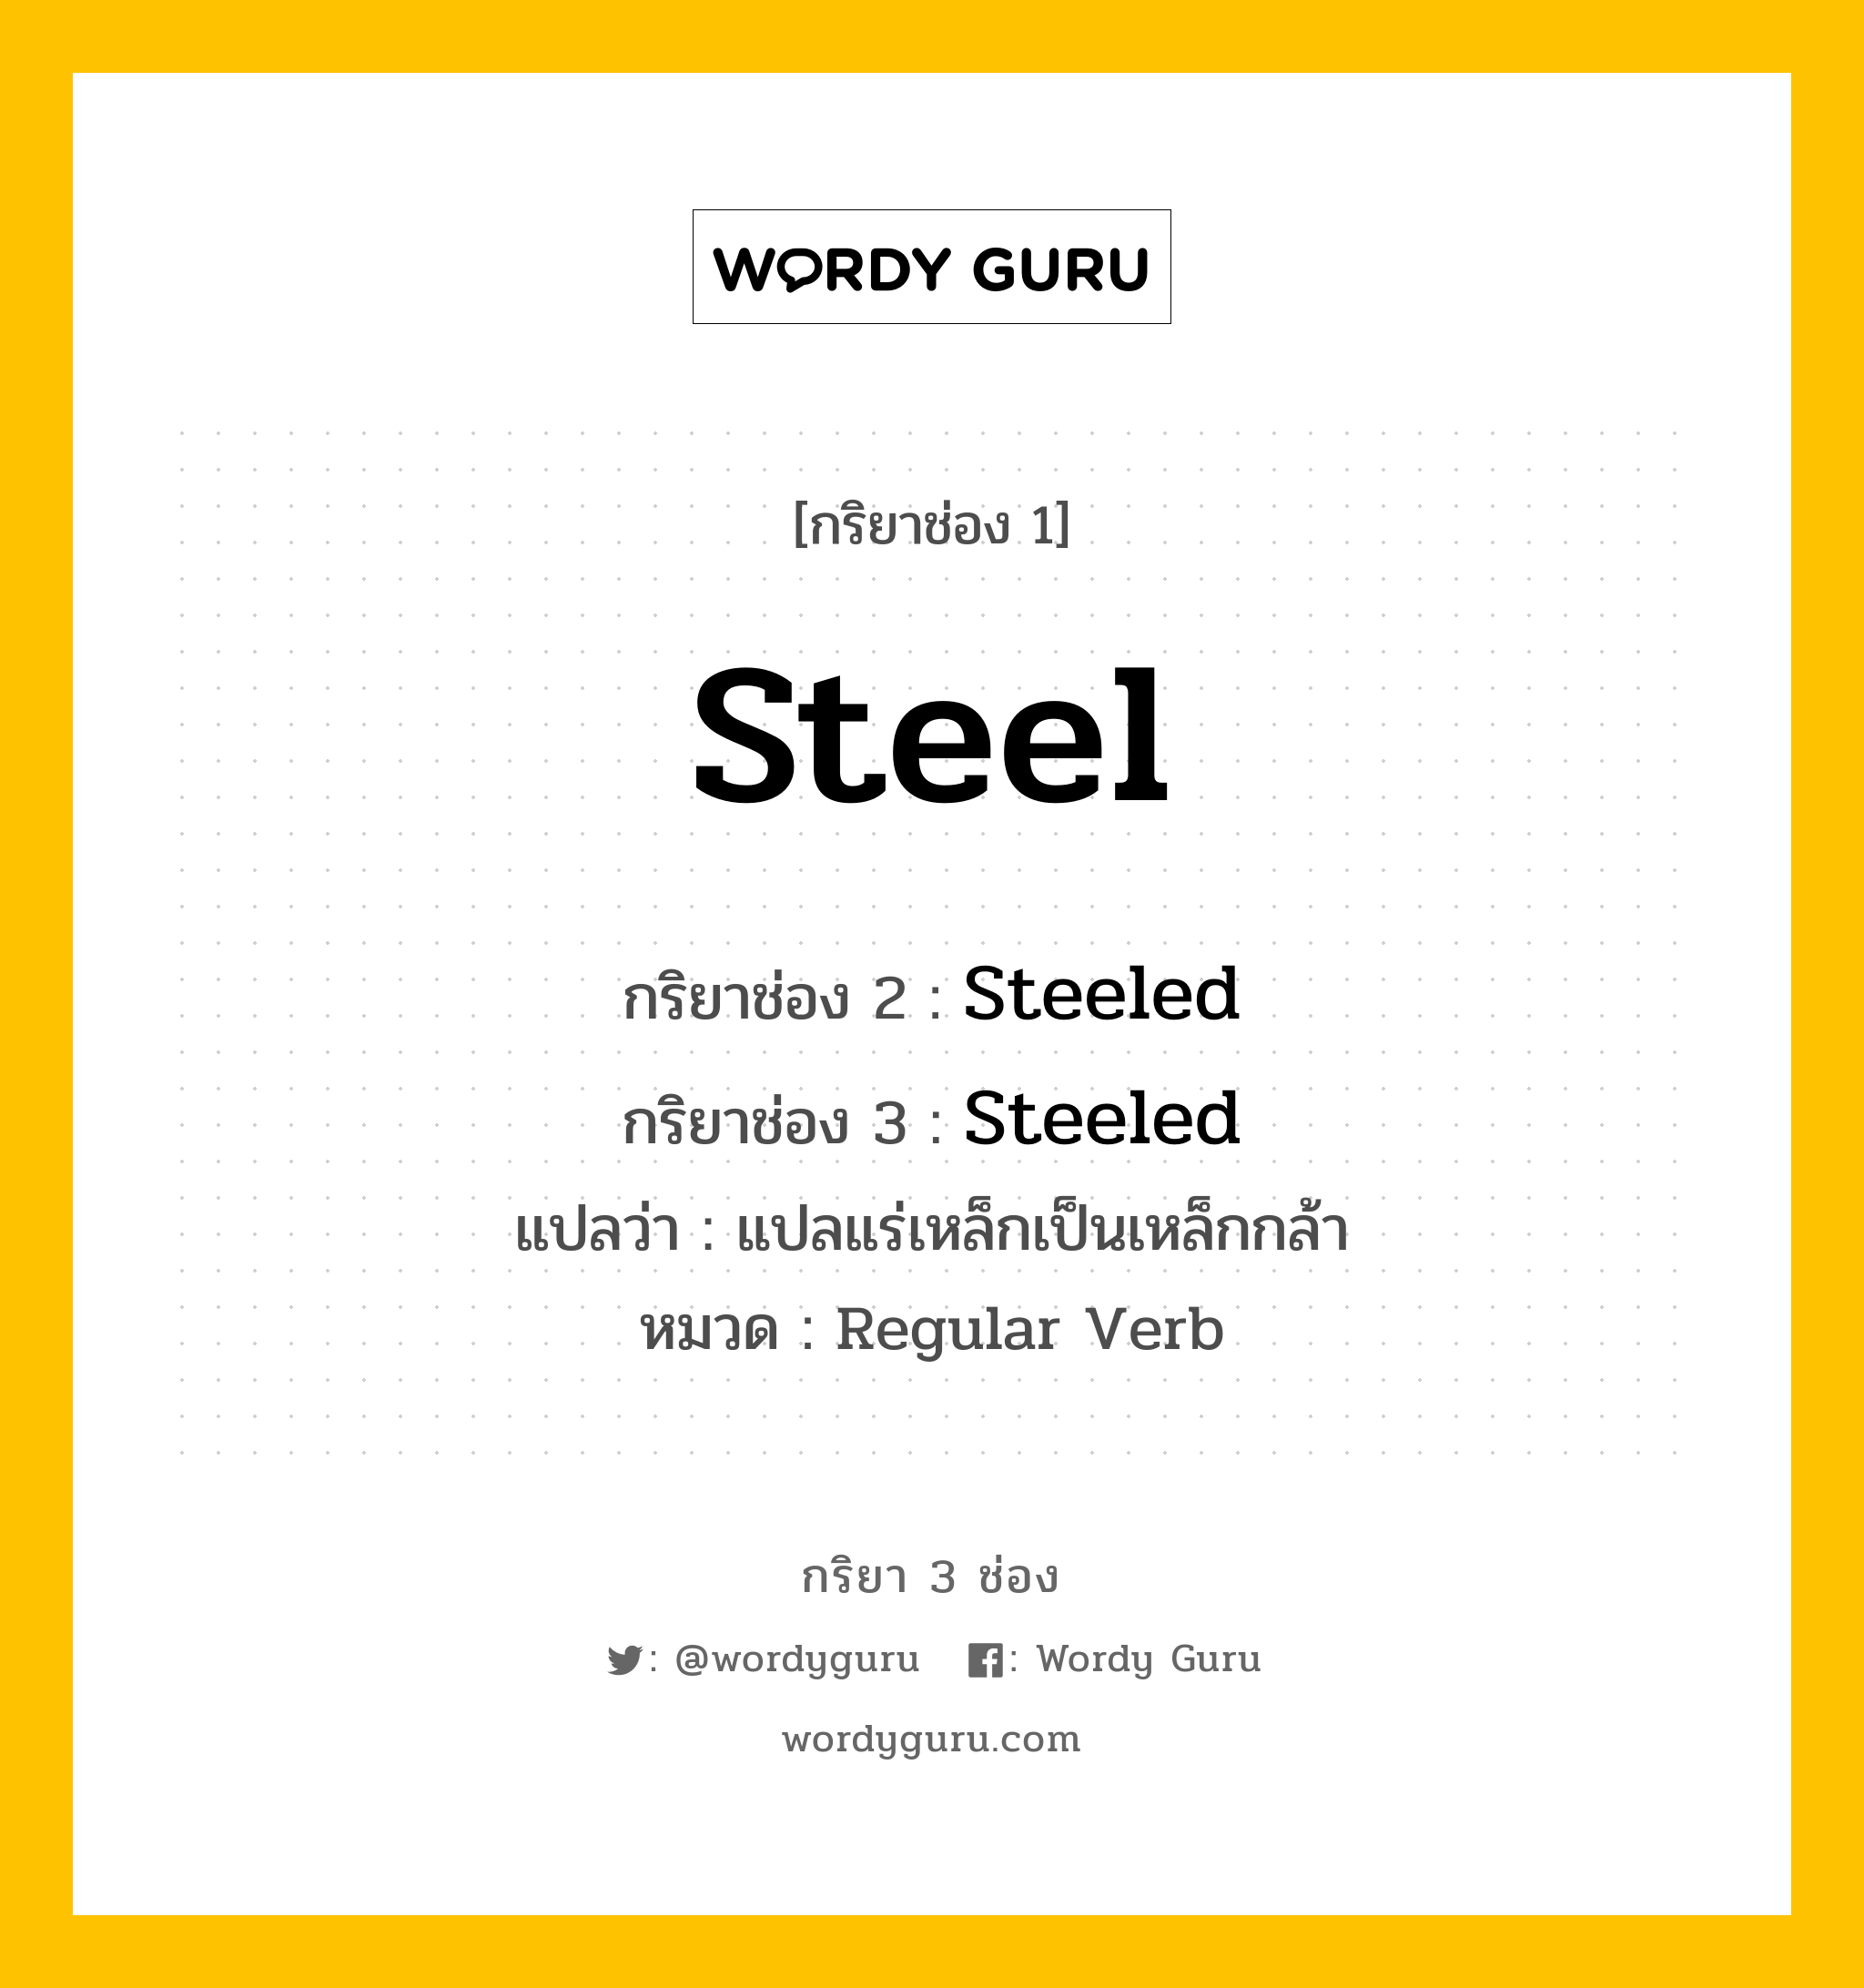 กริยา 3 ช่อง: Steel ช่อง 2 Steel ช่อง 3 คืออะไร, กริยาช่อง 1 Steel กริยาช่อง 2 Steeled กริยาช่อง 3 Steeled แปลว่า แปลแร่เหล็กเป็นเหล็กกล้า หมวด Regular Verb หมวด Regular Verb